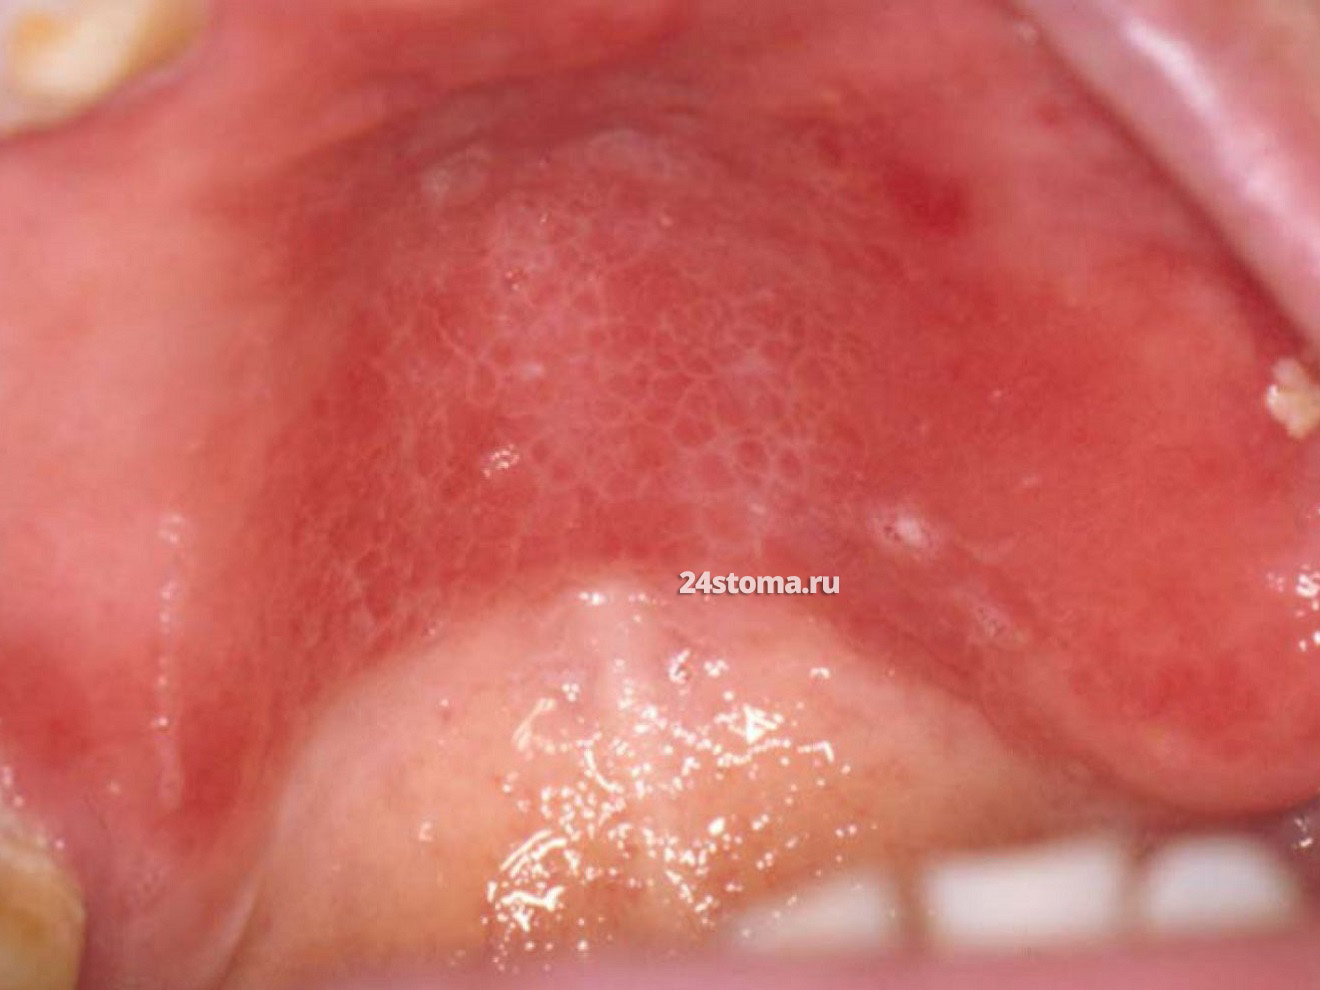 Воспалительная папиллярная гиперплазия (под съемным протезом на верхней челюсти)